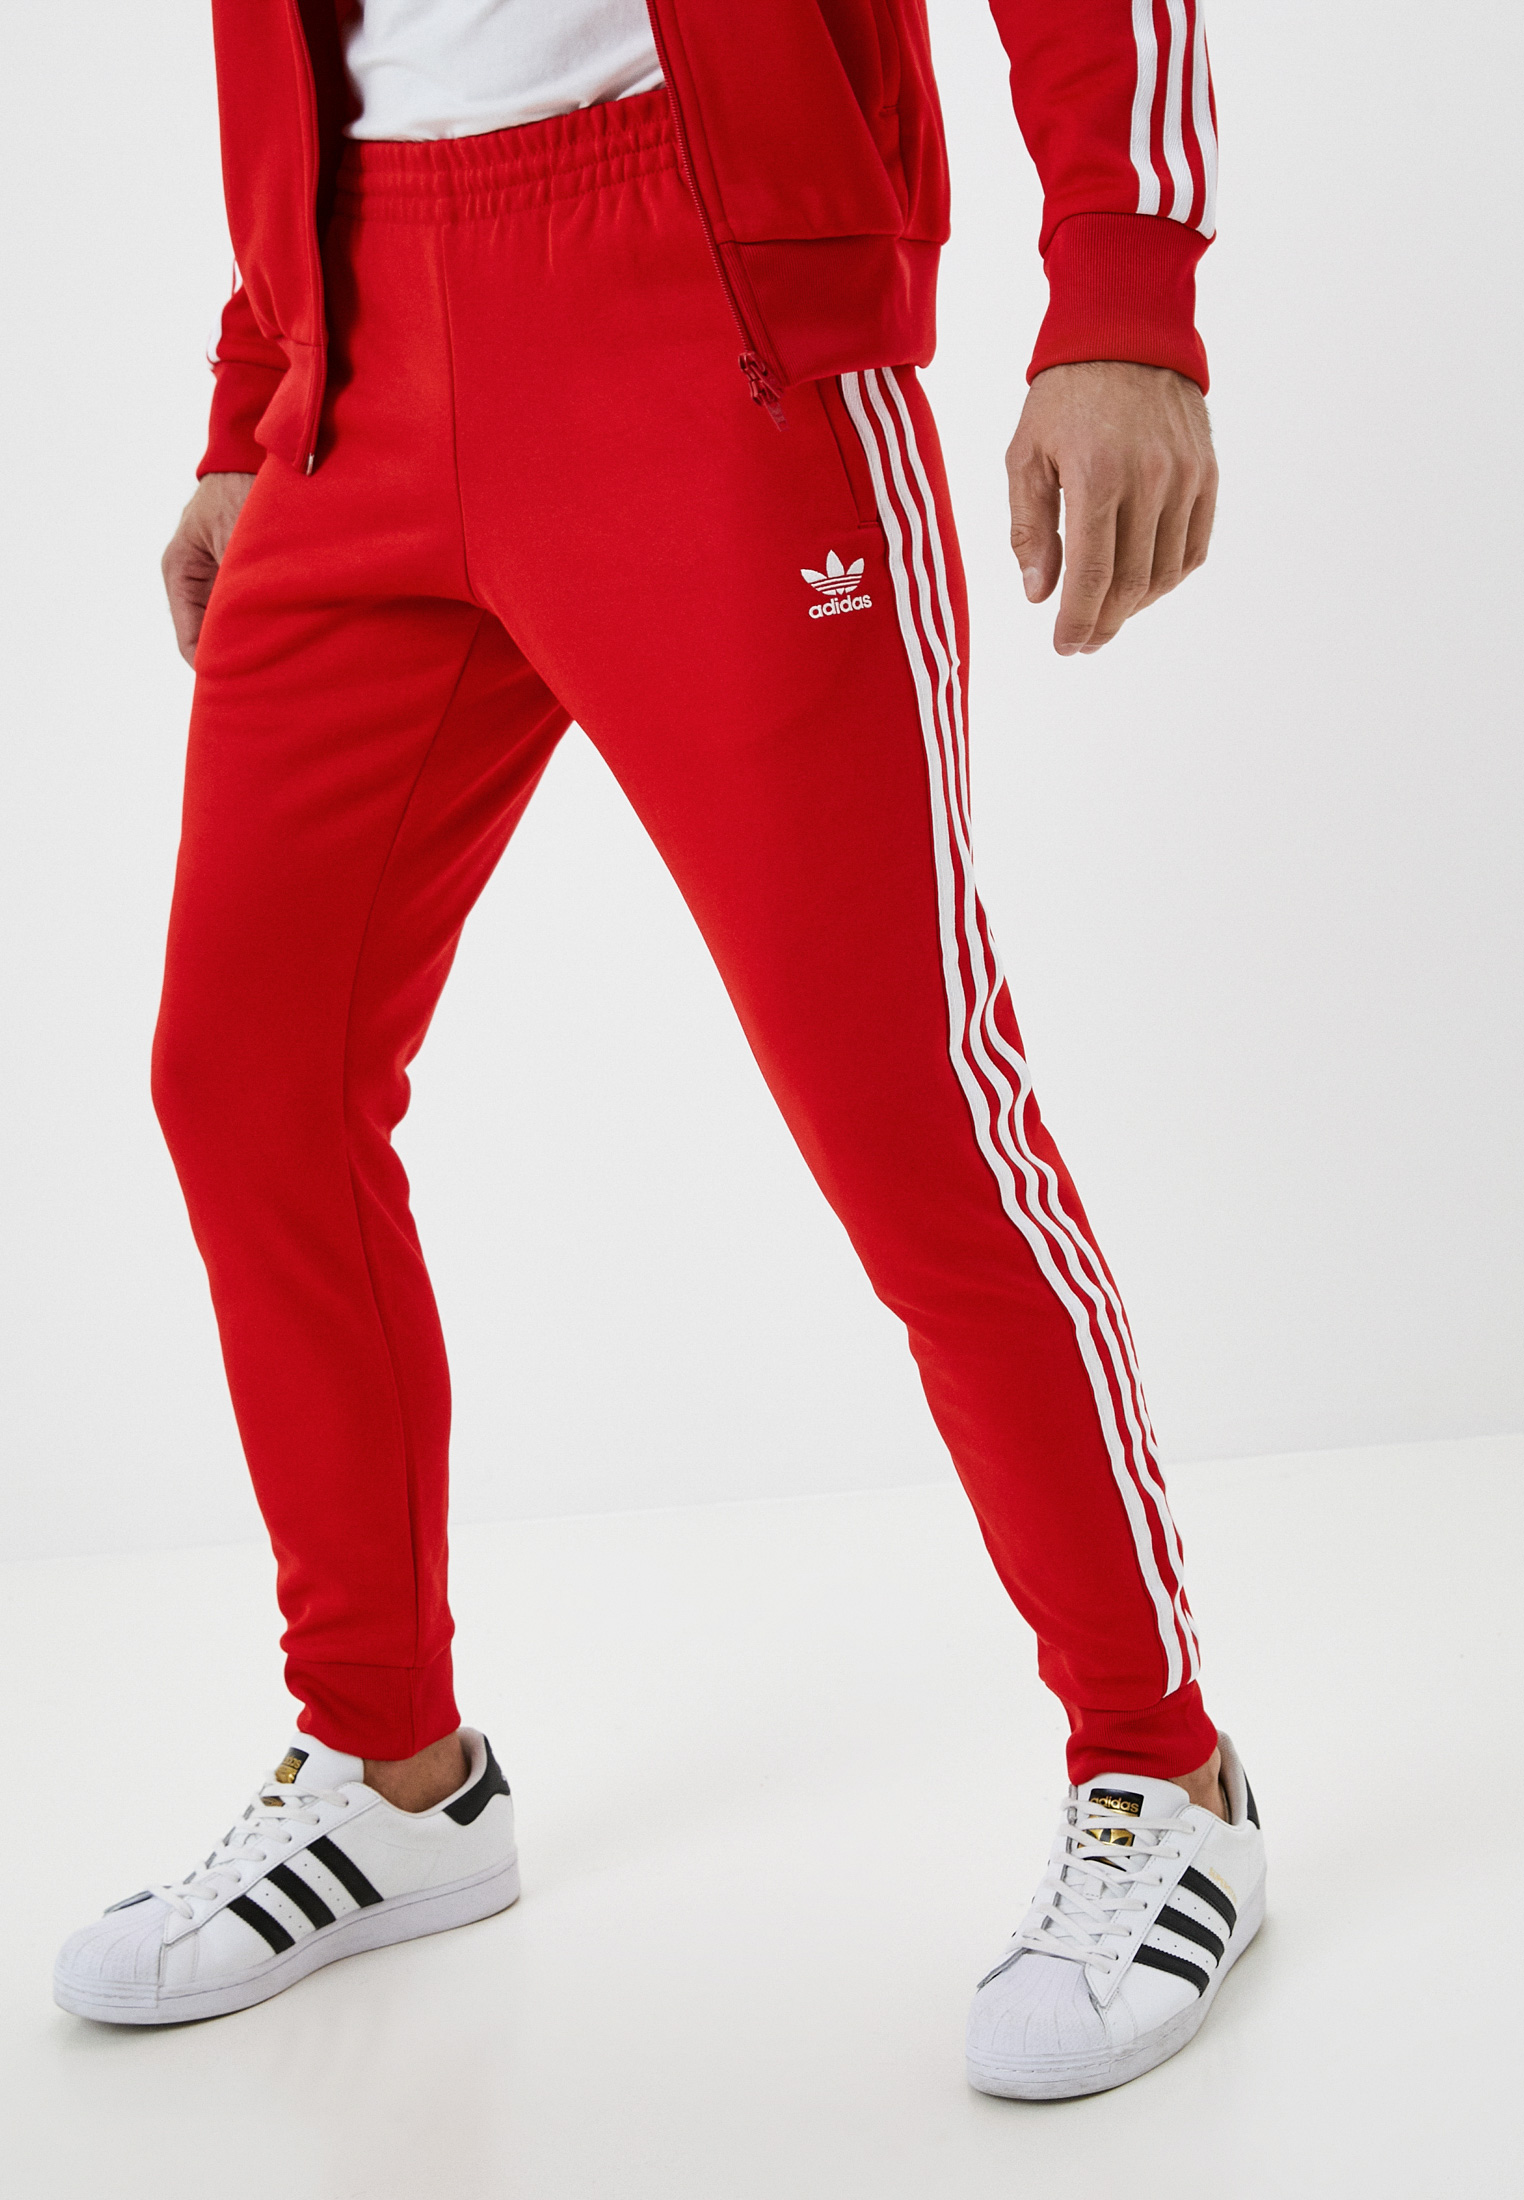 Брюки спортивные adidas Originals SST TP P BLUE, цвет: красный,  RTLABC363501 — купить в интернет-магазине Lamoda